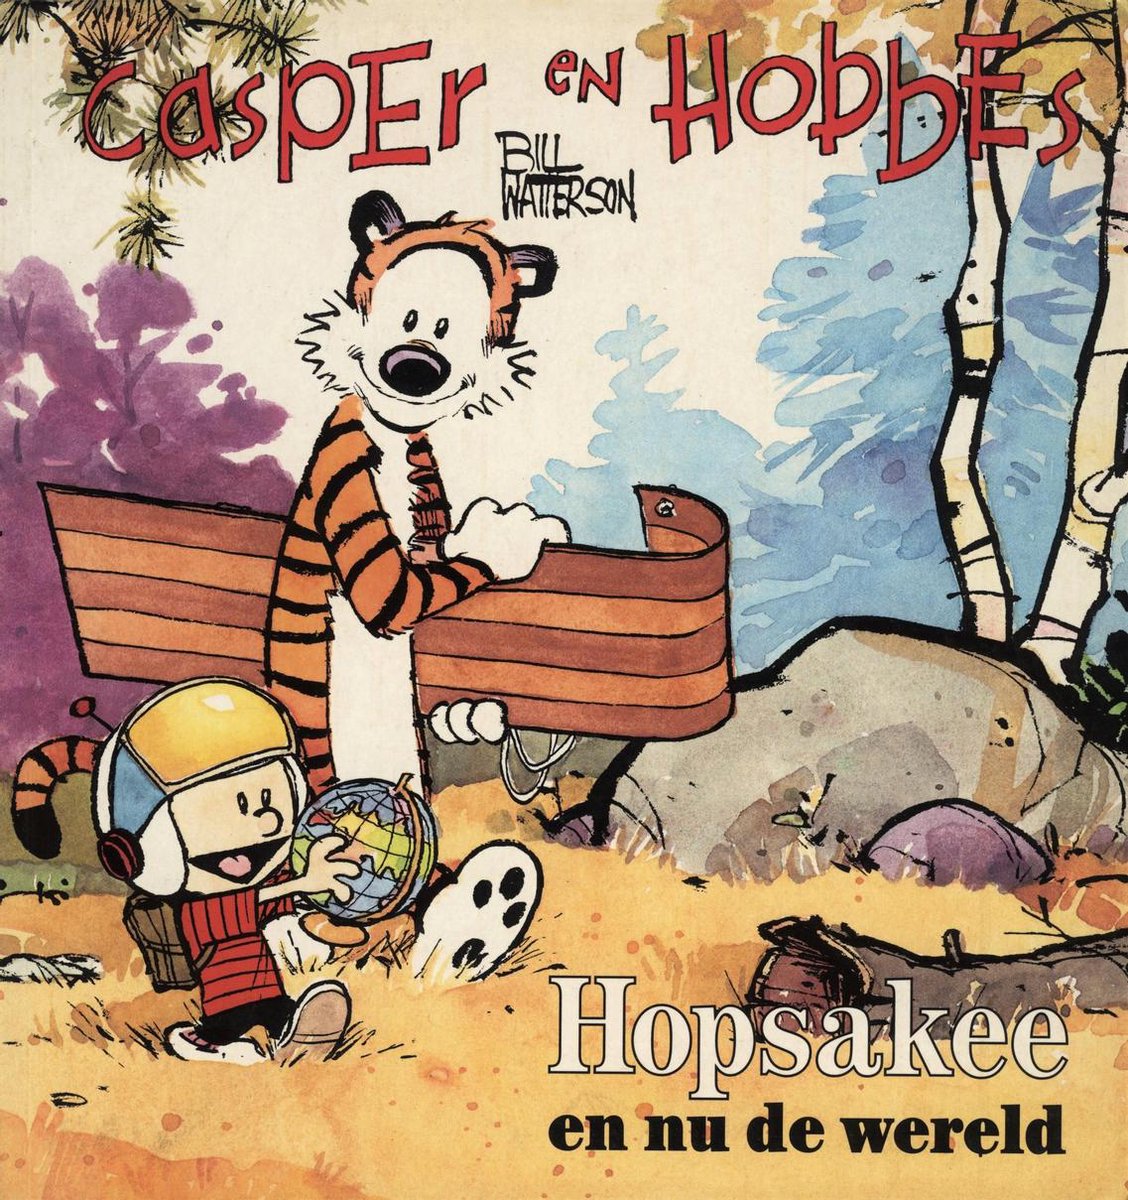 Casper en Hobbes 3: Hopsakee, en nu de wereld